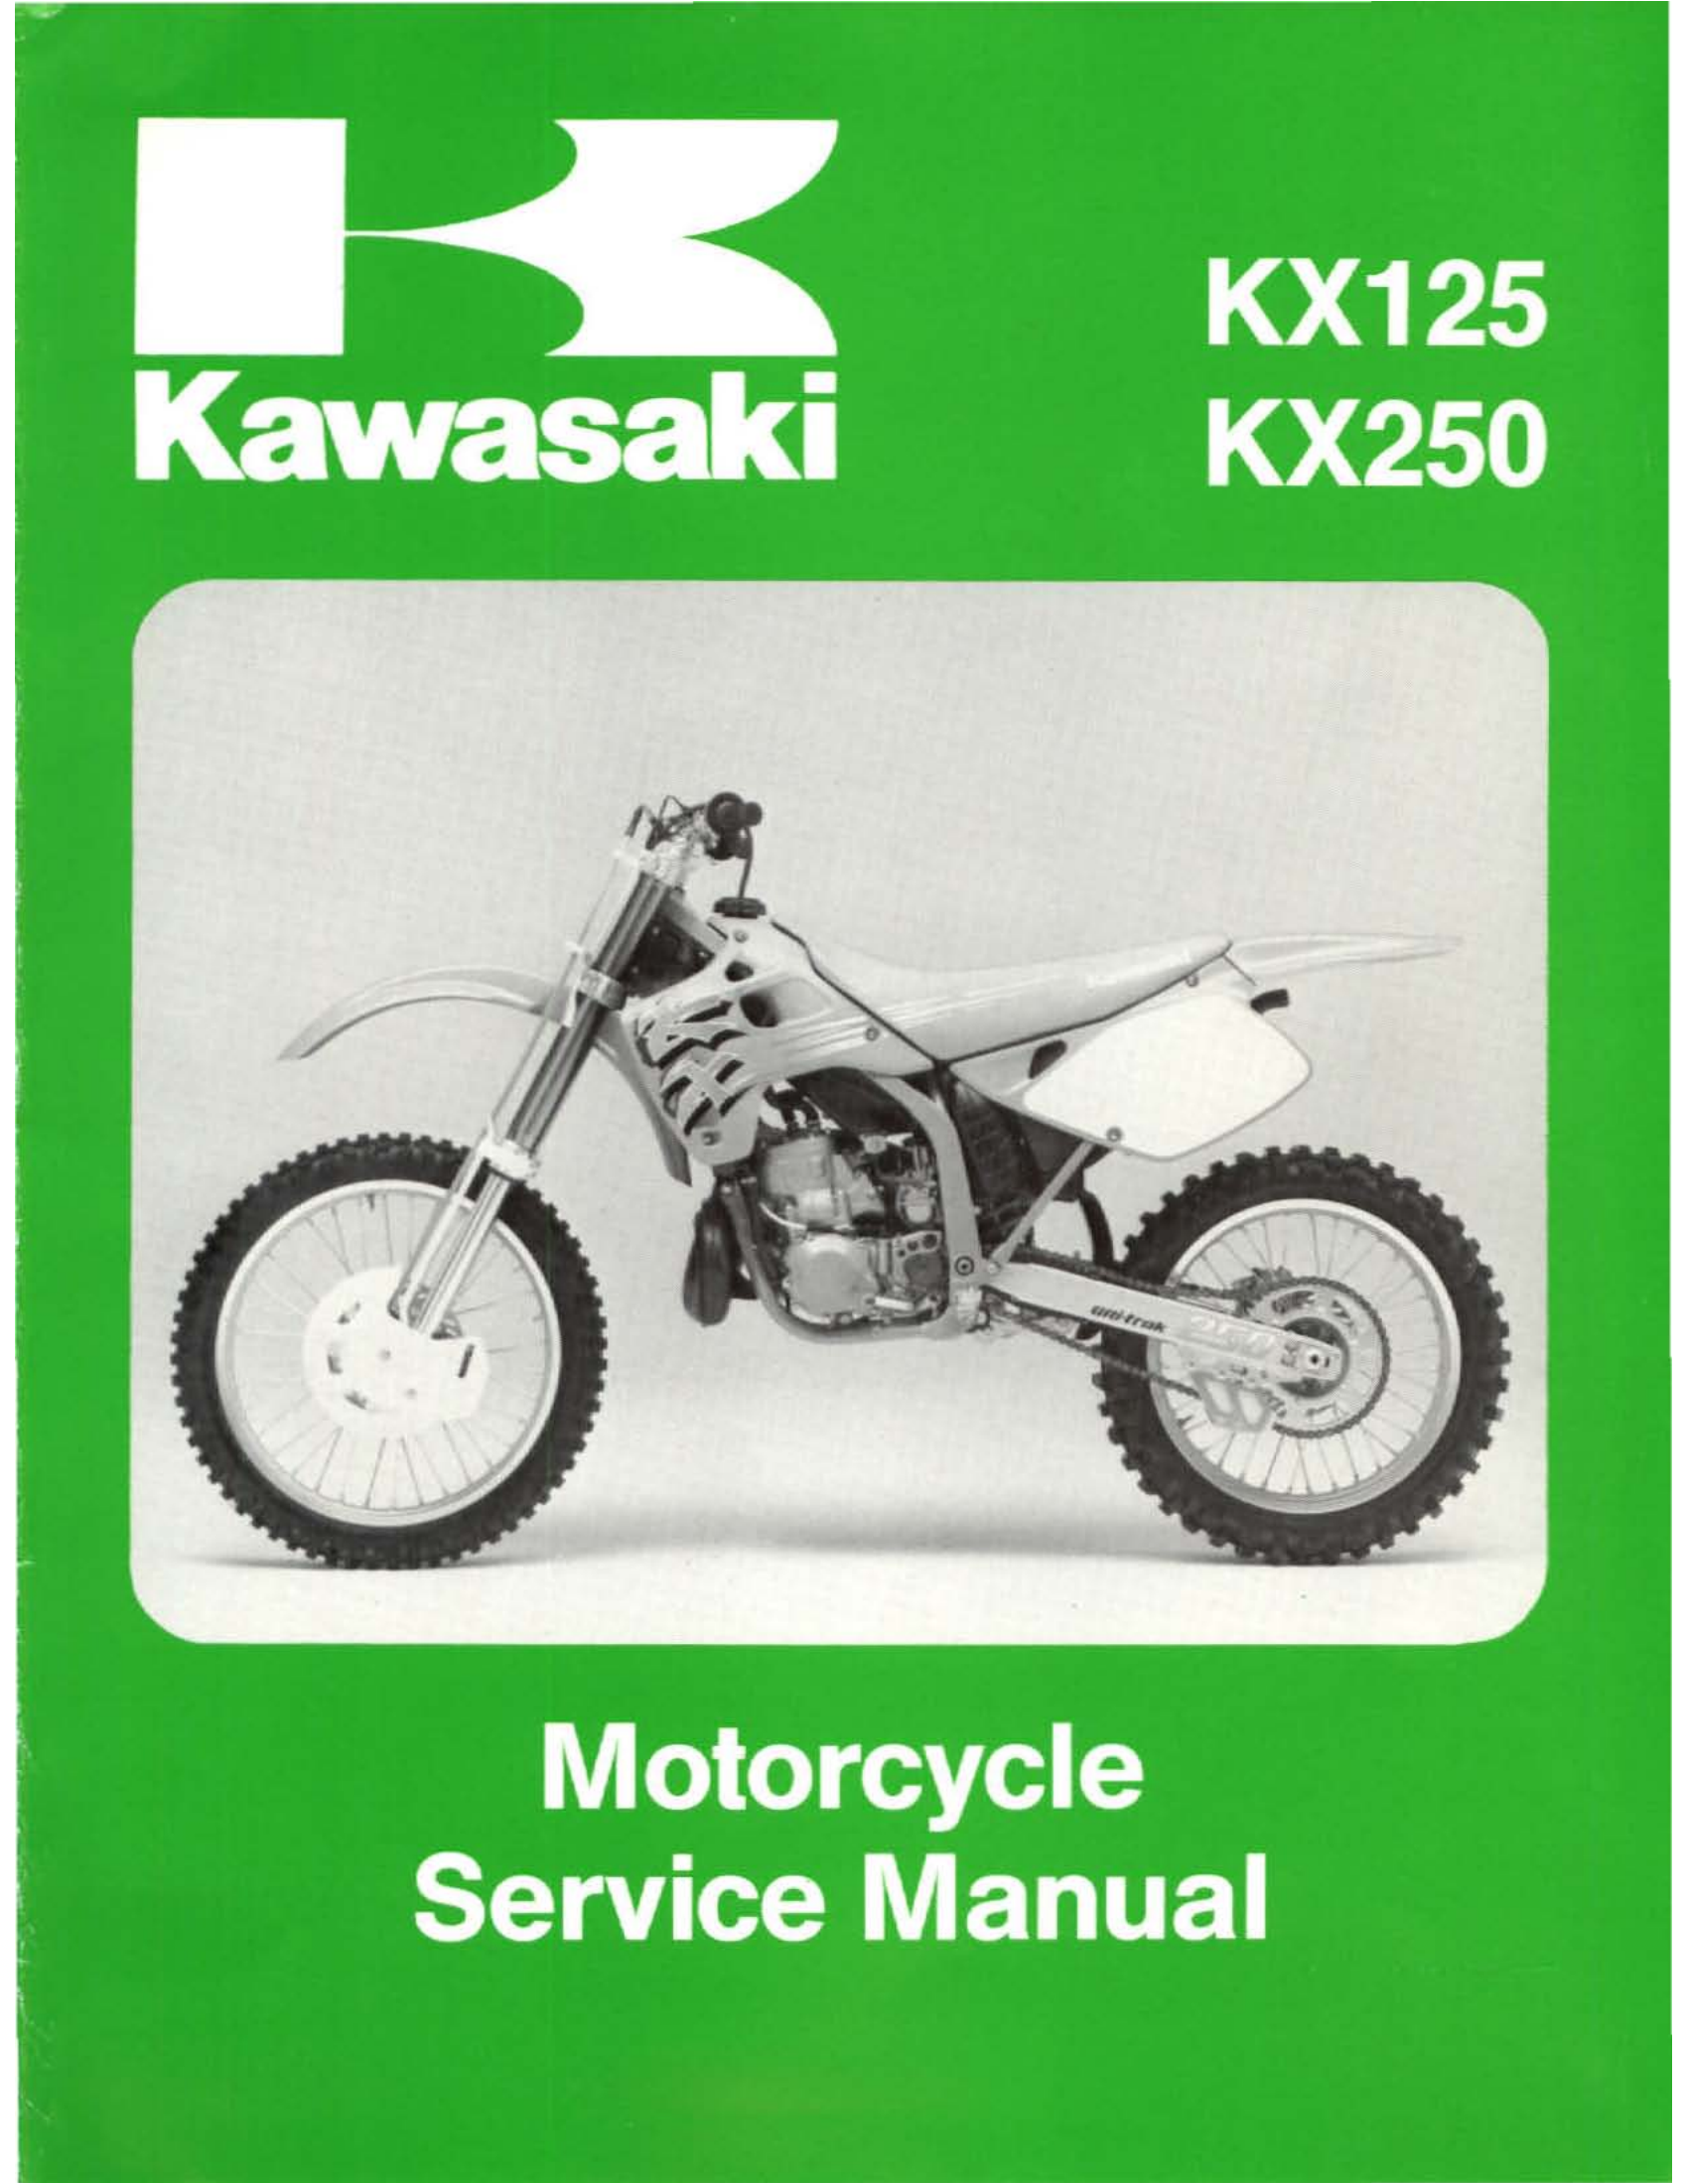 原版英文1992-1993年川崎kx125 kx250维修手册kawasaki kx125 kx250 维修手册插图